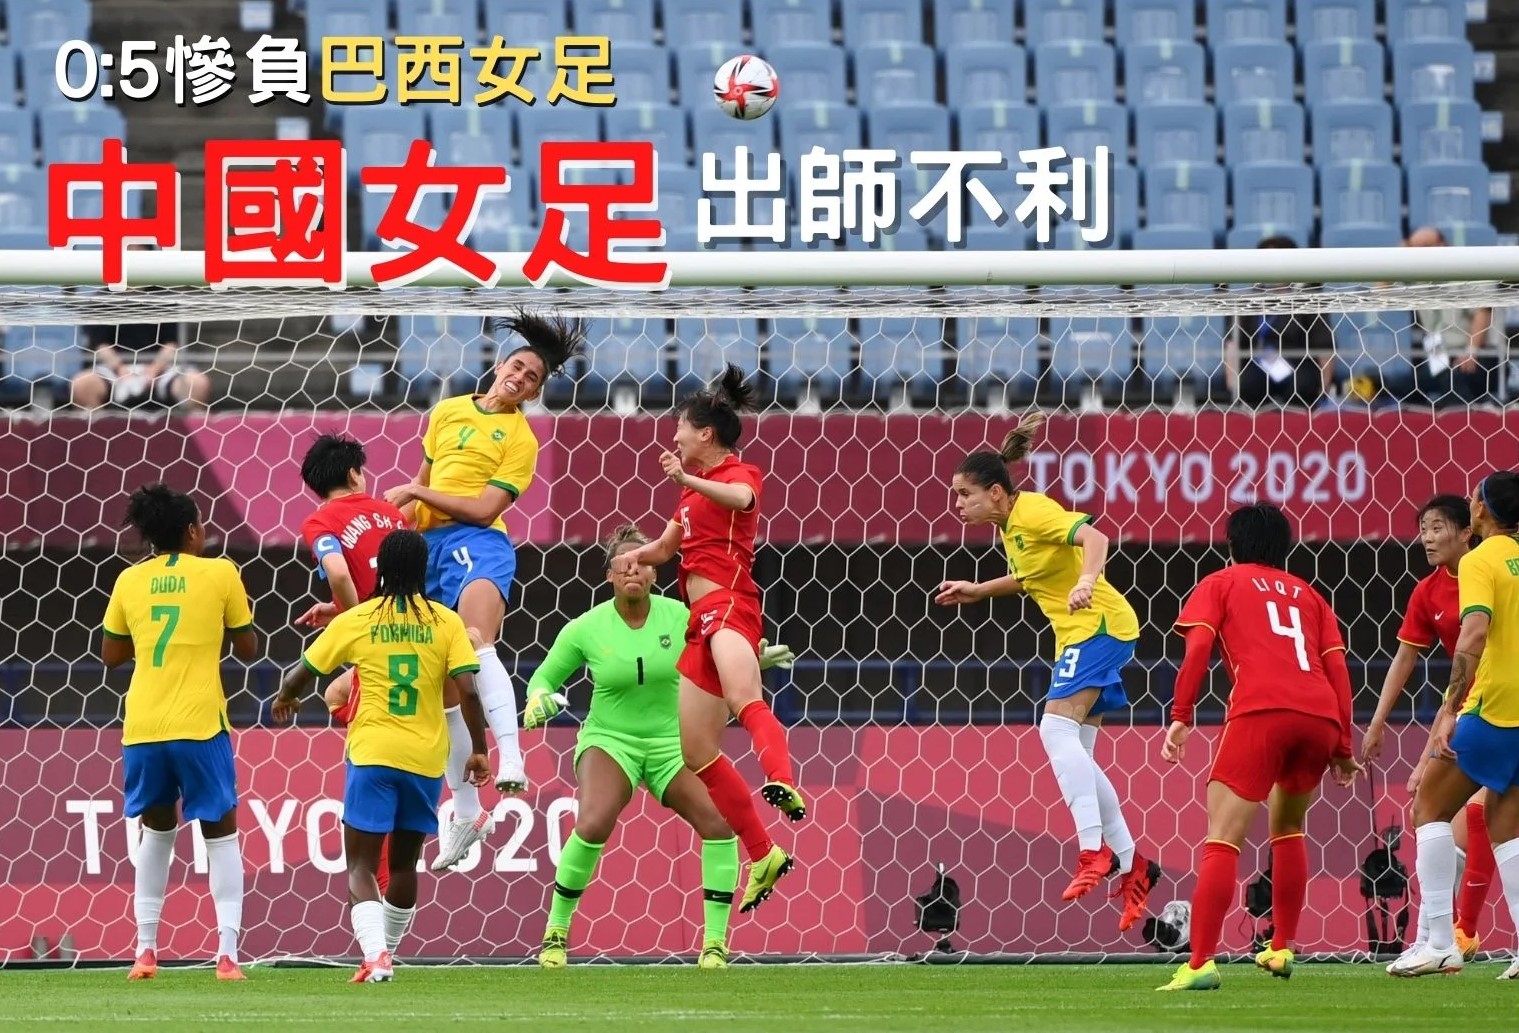 中國女足奧運首戰0-5不敵巴西